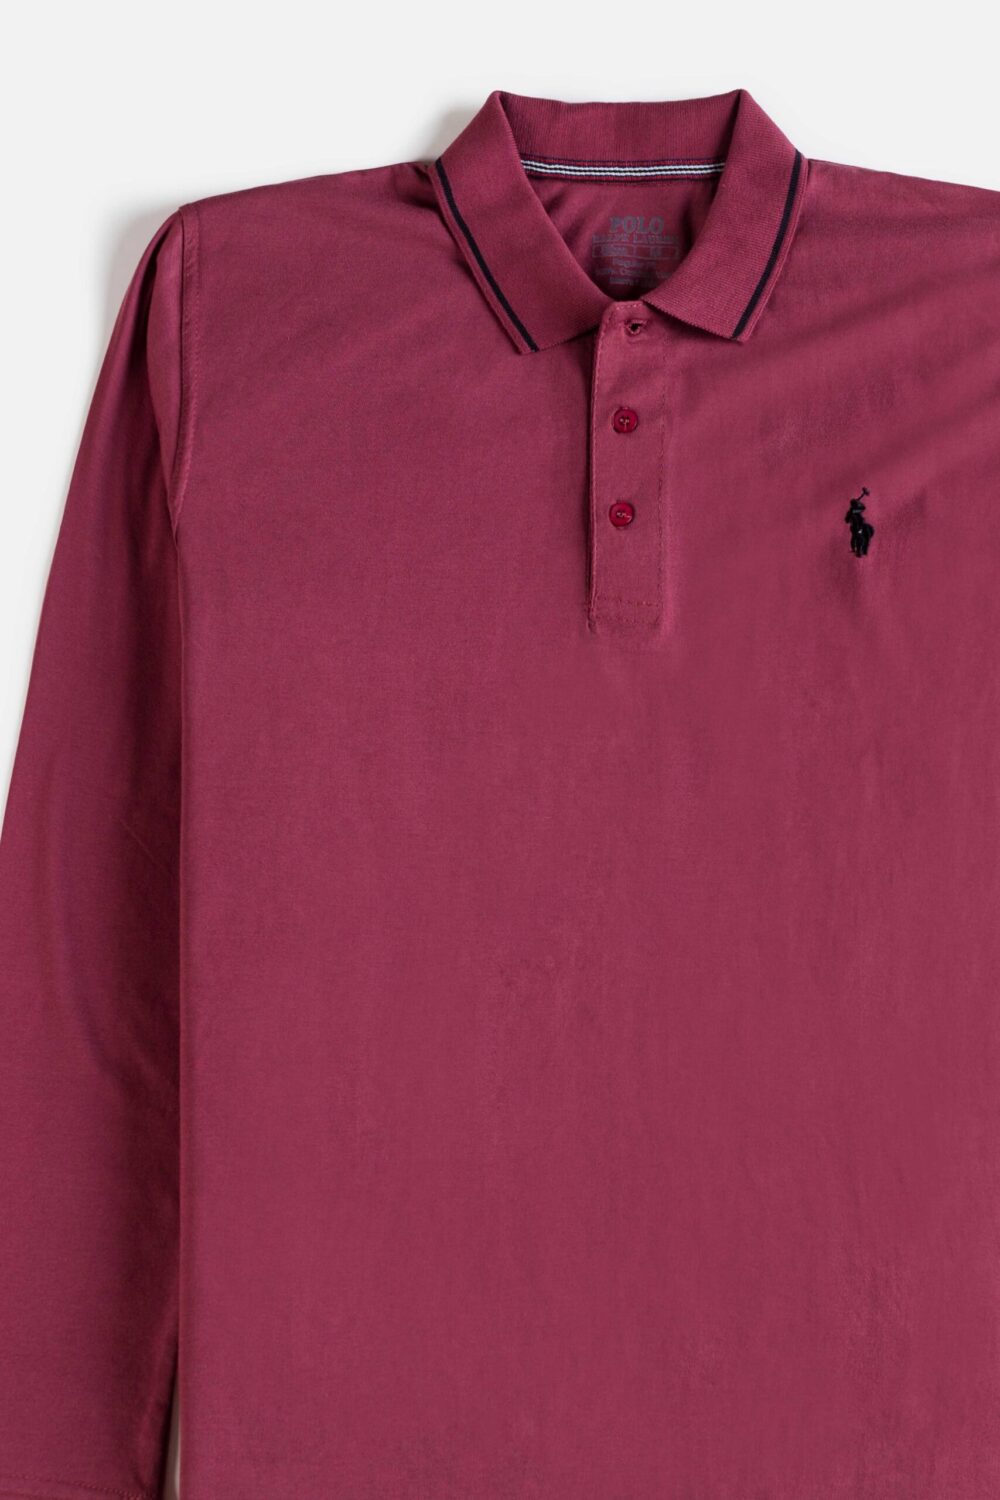 RL Premium Cotton Full Polo – Rouge